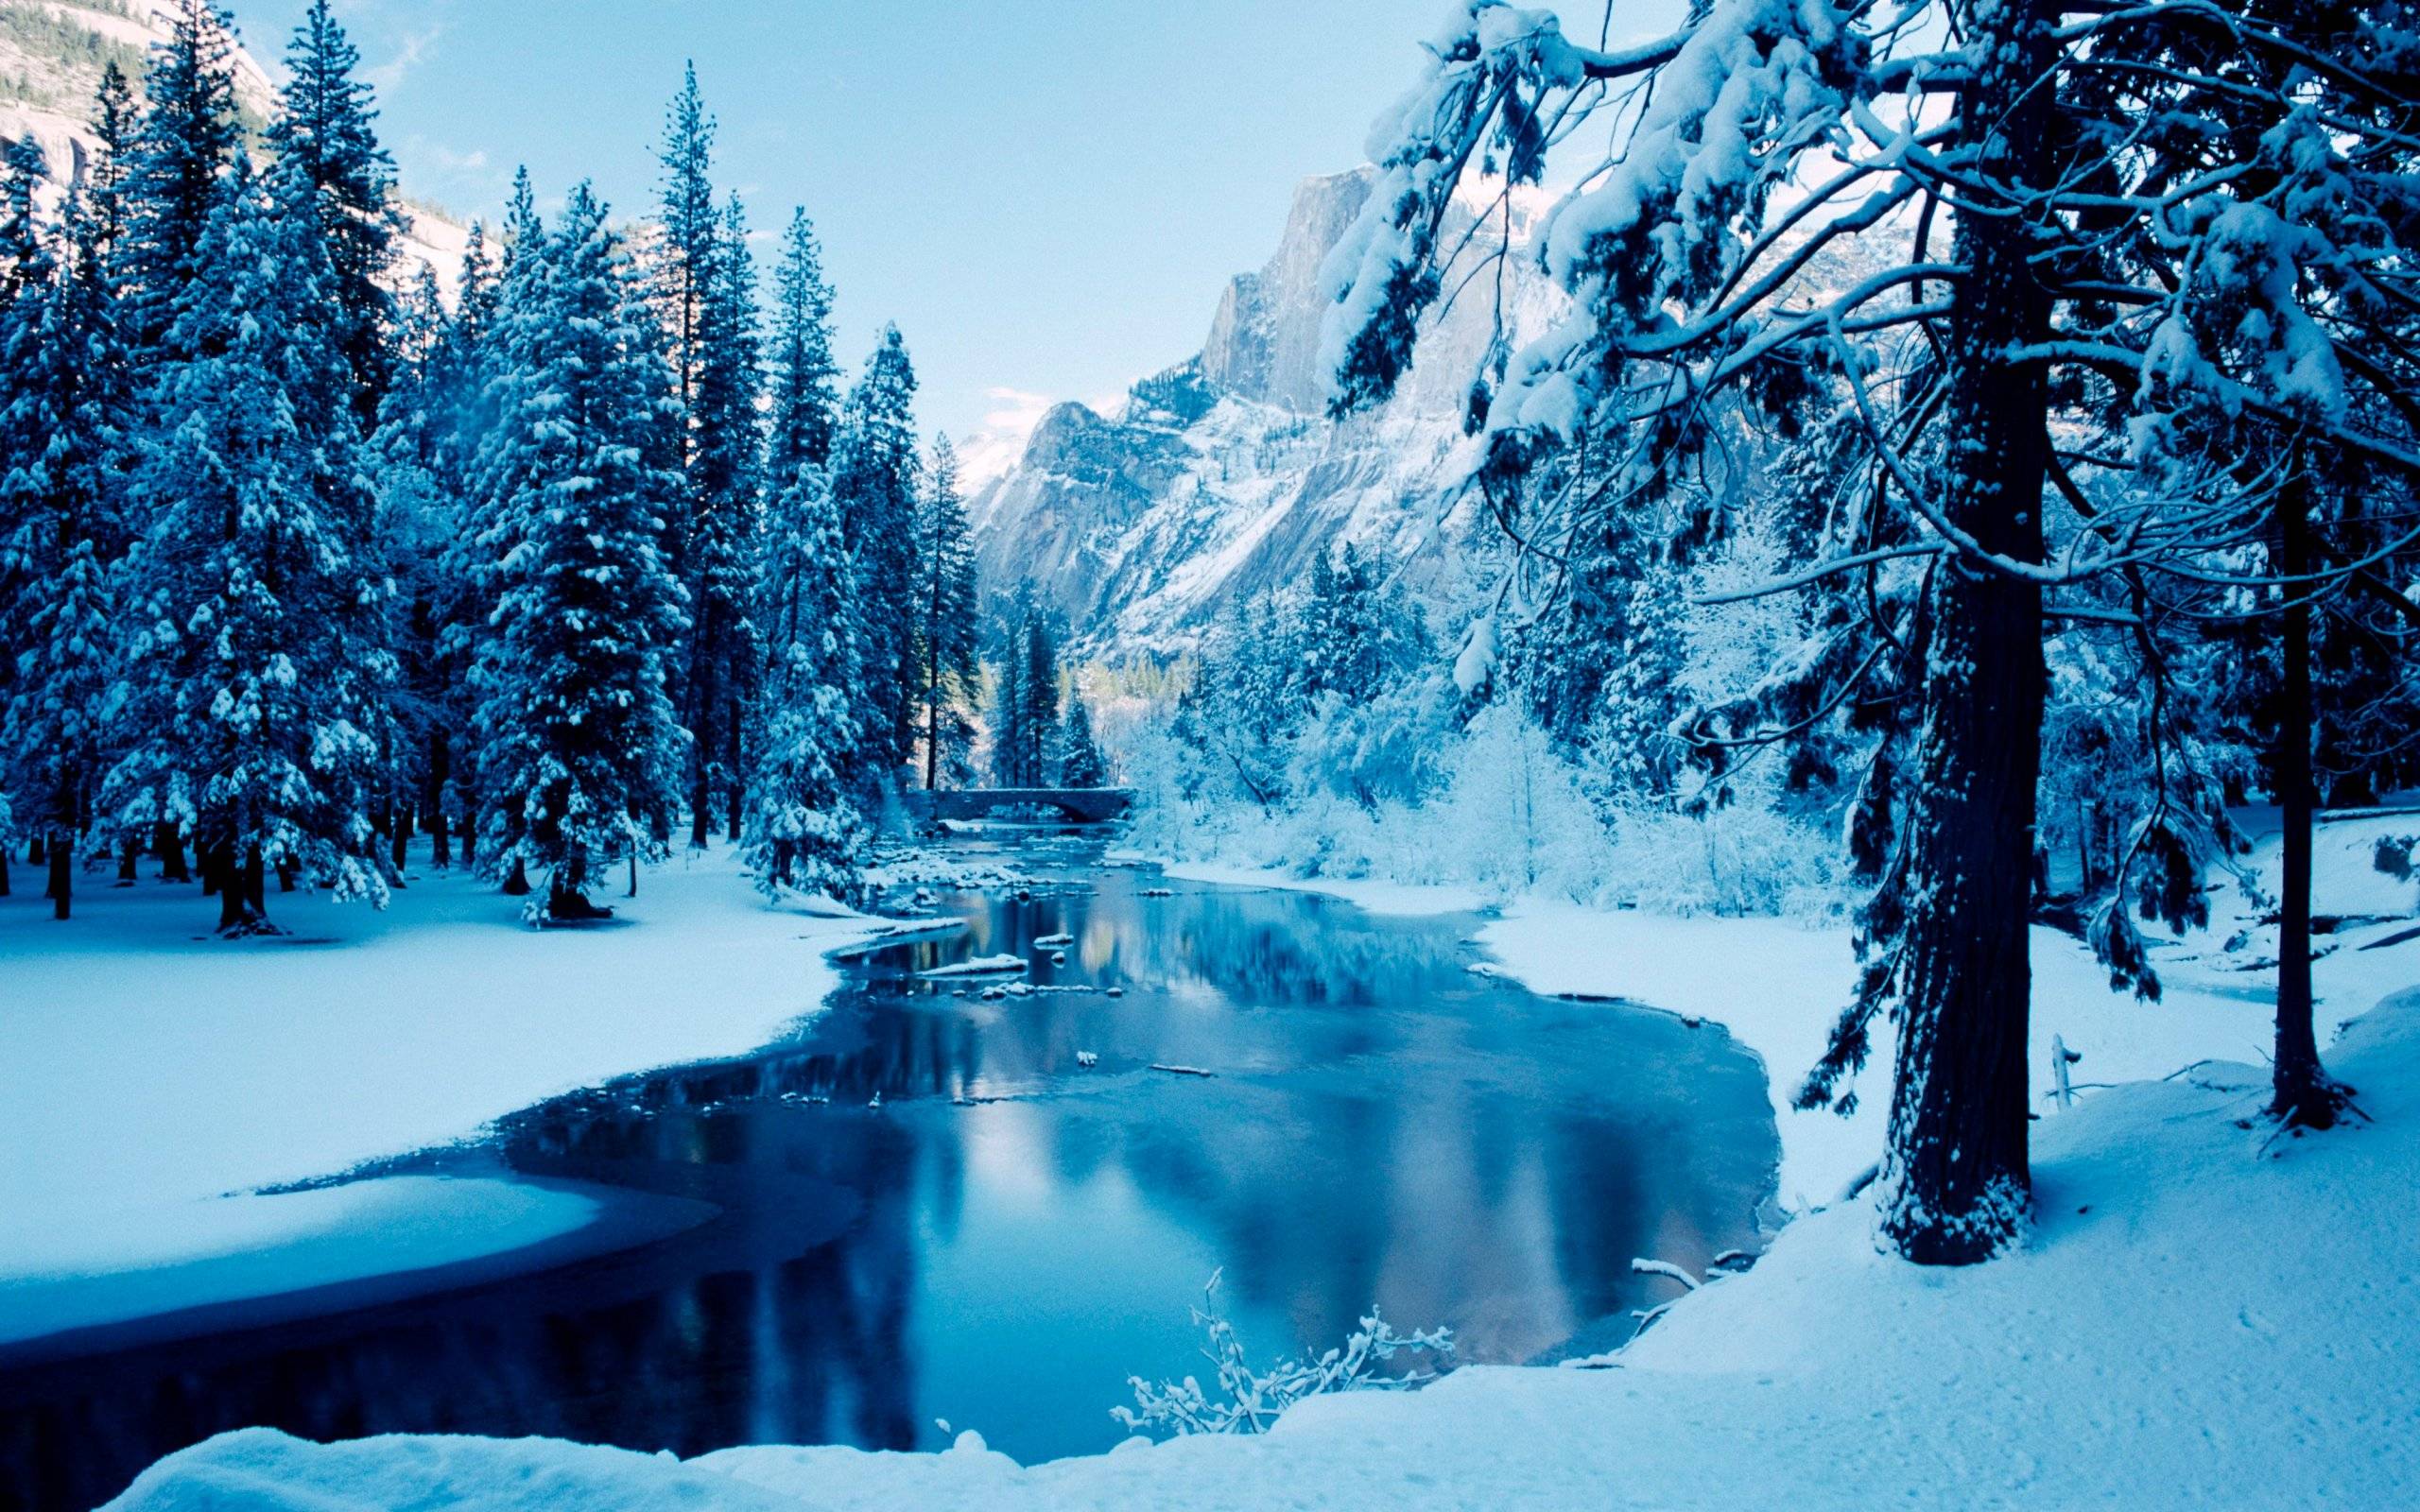 Blue Ice Winter Landscape Widescreen Wallpaper. Wide Wallpaper.NET